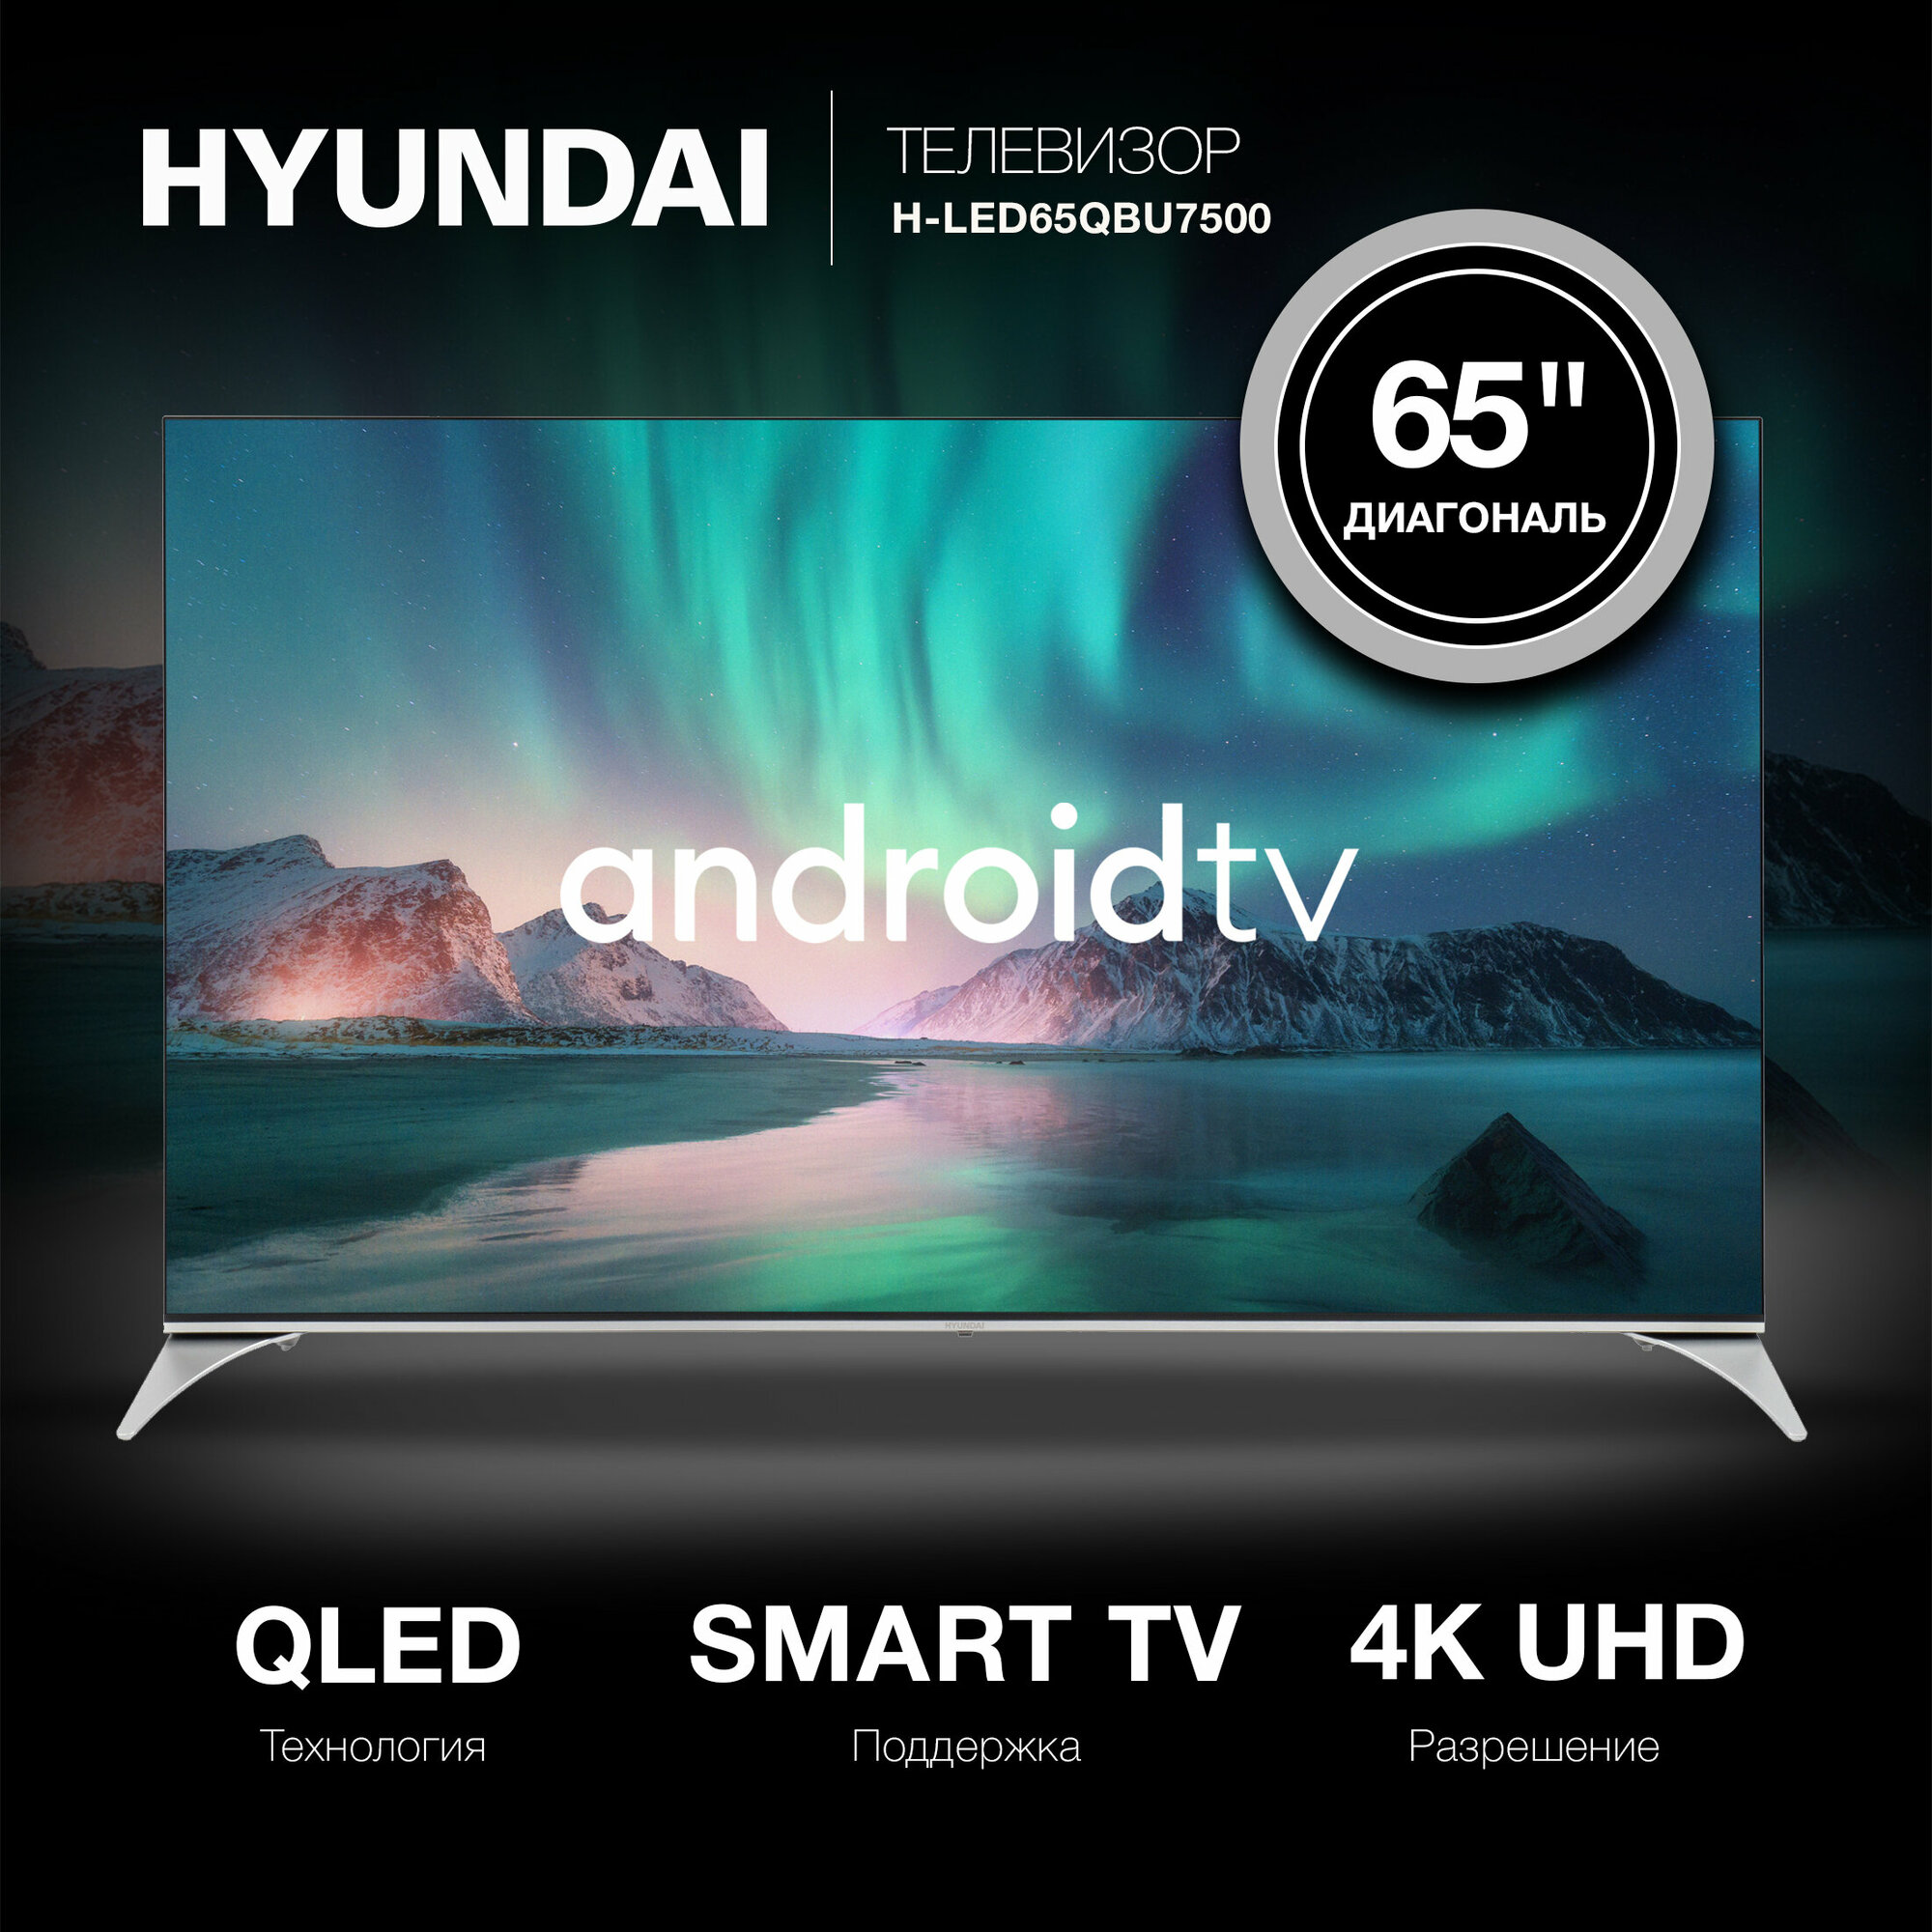 Телевизор Hyundai Android TV H-LED65QBU7500, 65", QLED, 4K Ultra HD, черный